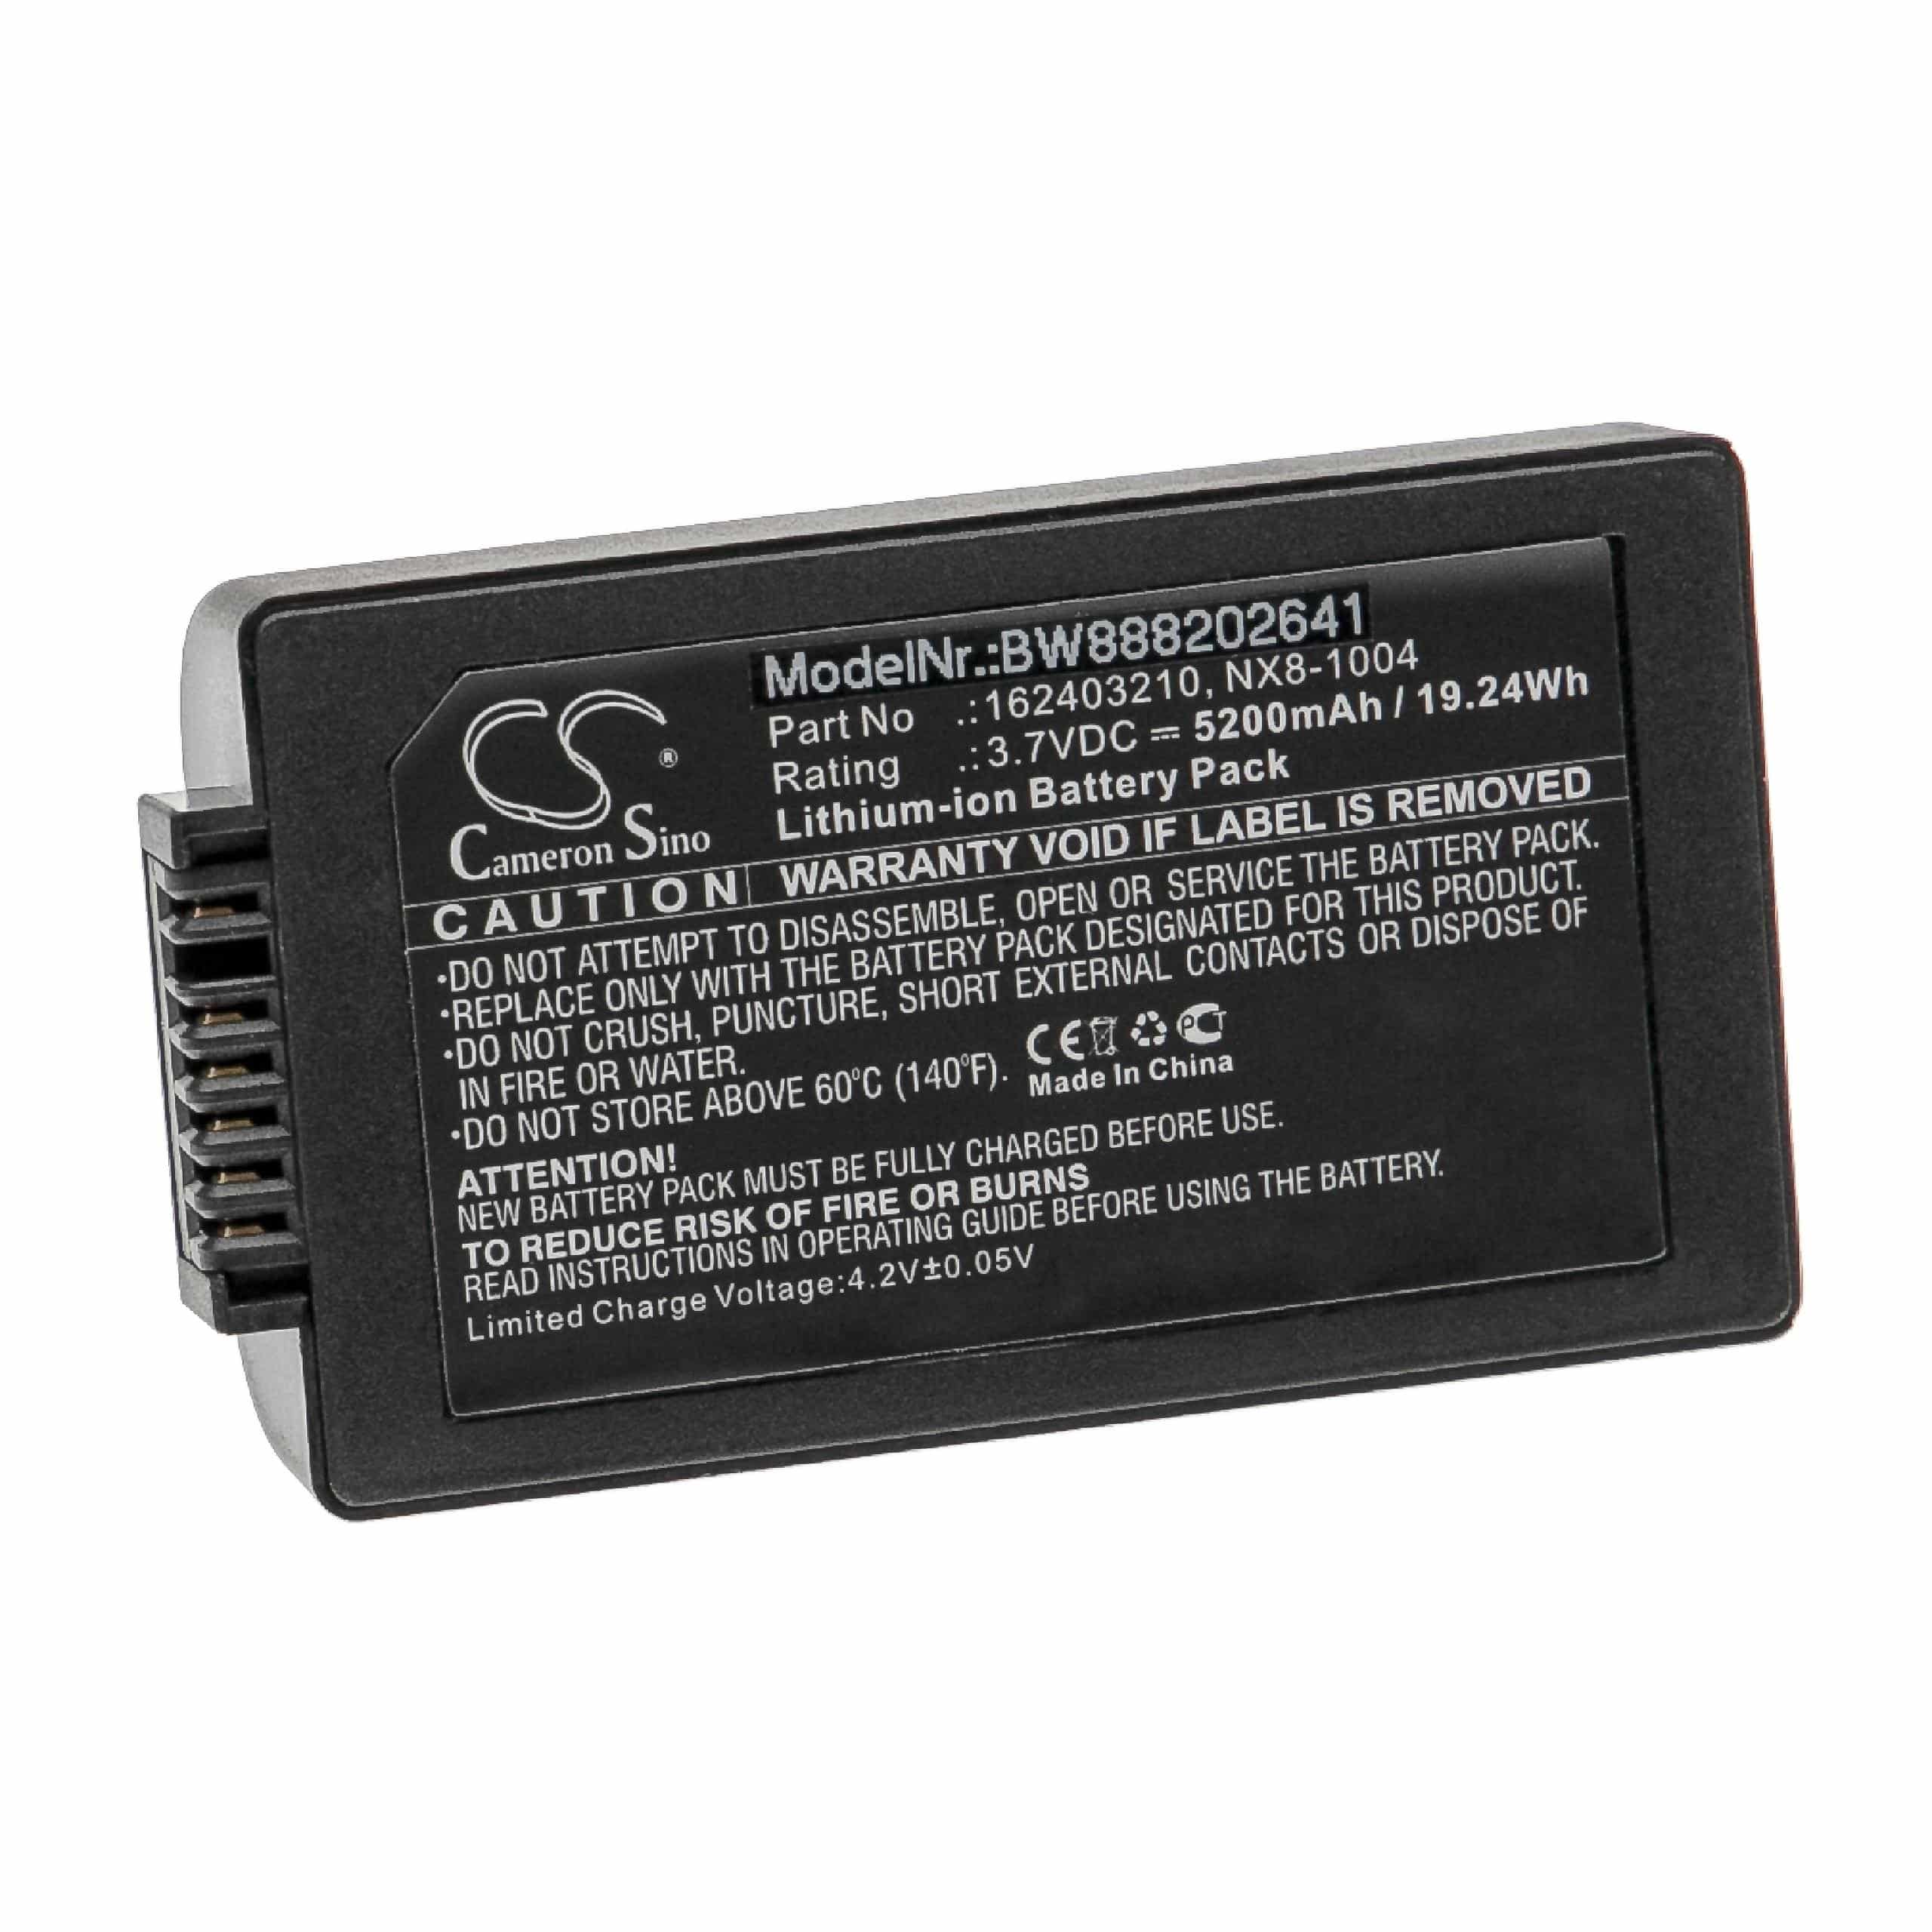 Handheld Computer Battery Replacement for Handheld BAT-G2-003, BP14-001200, 162403210 - 5200mAh, 3.7V